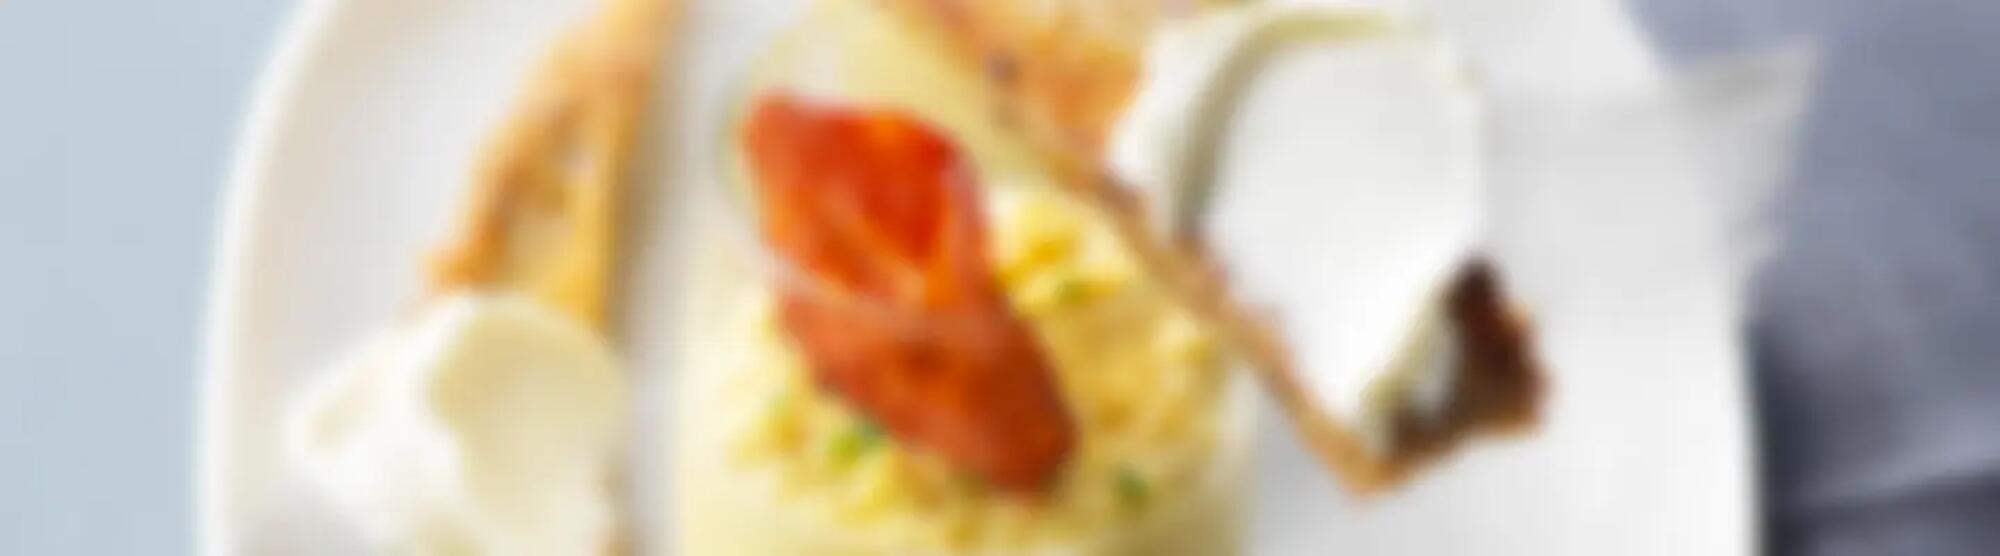 Recette : Œufs brouillés au fromage frais et chorizo, toasts frottés à l’ail